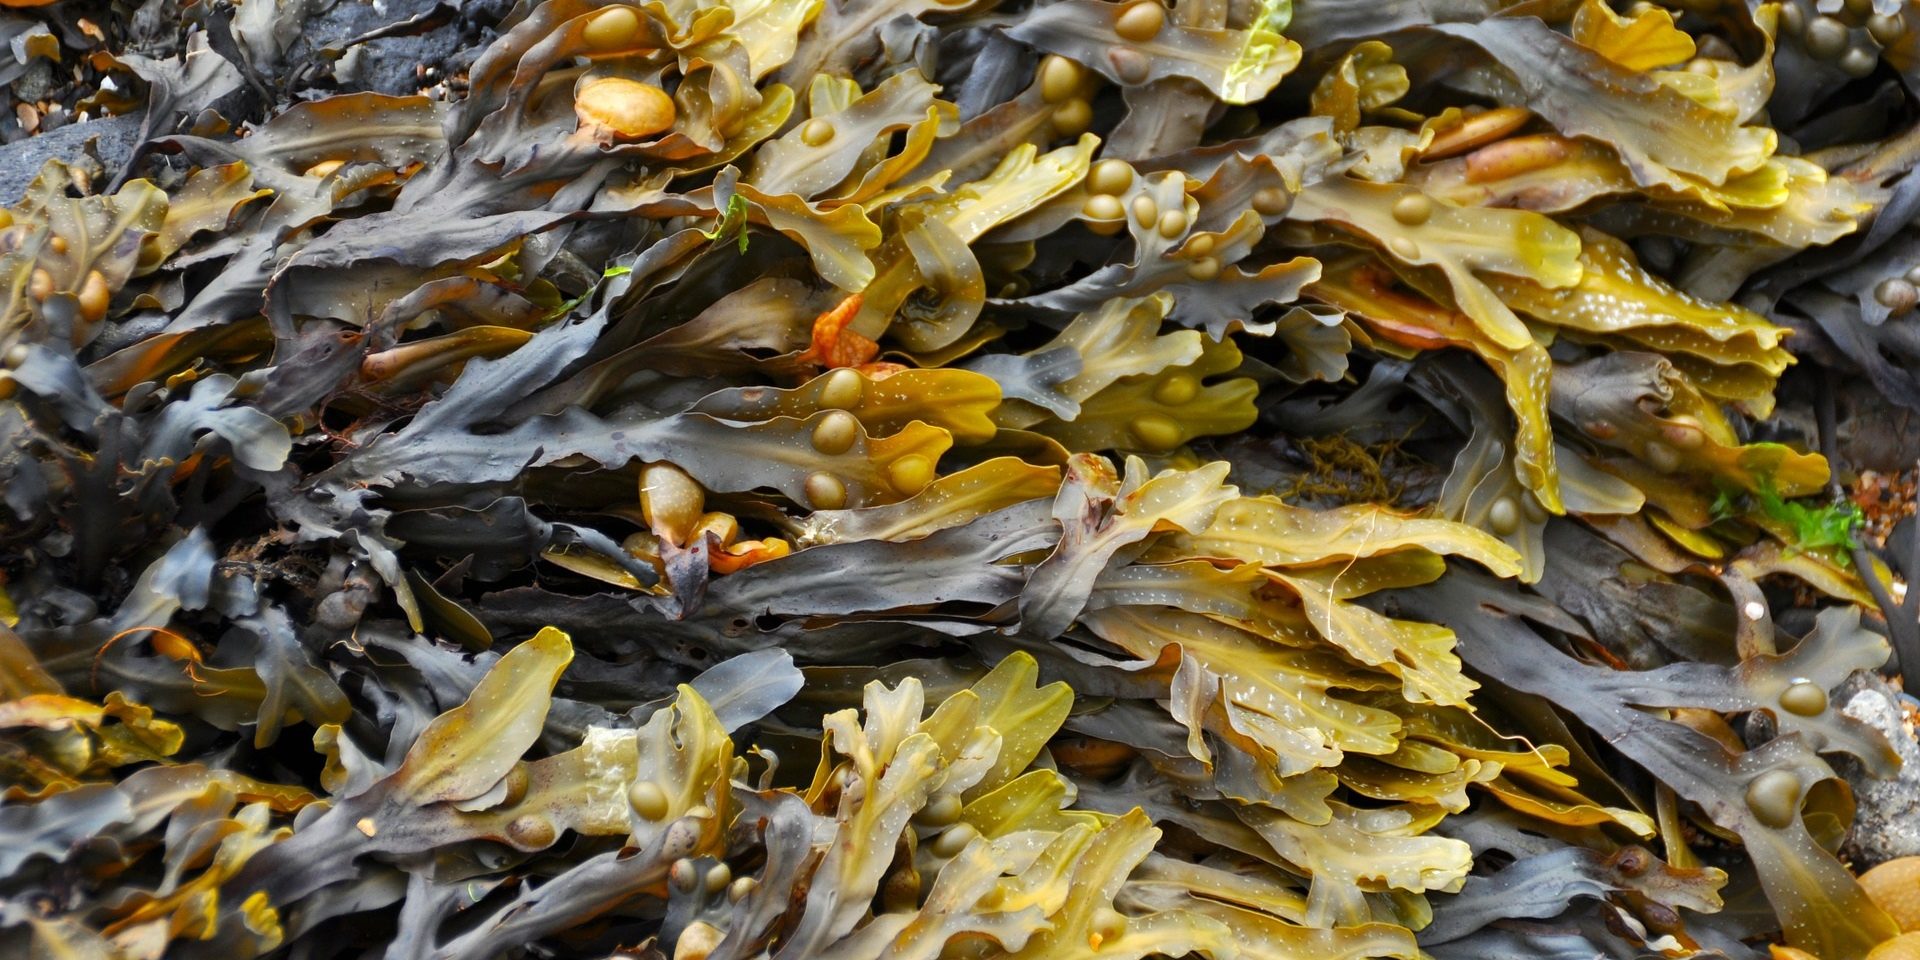 Bladderwrack Sea weed, Organic